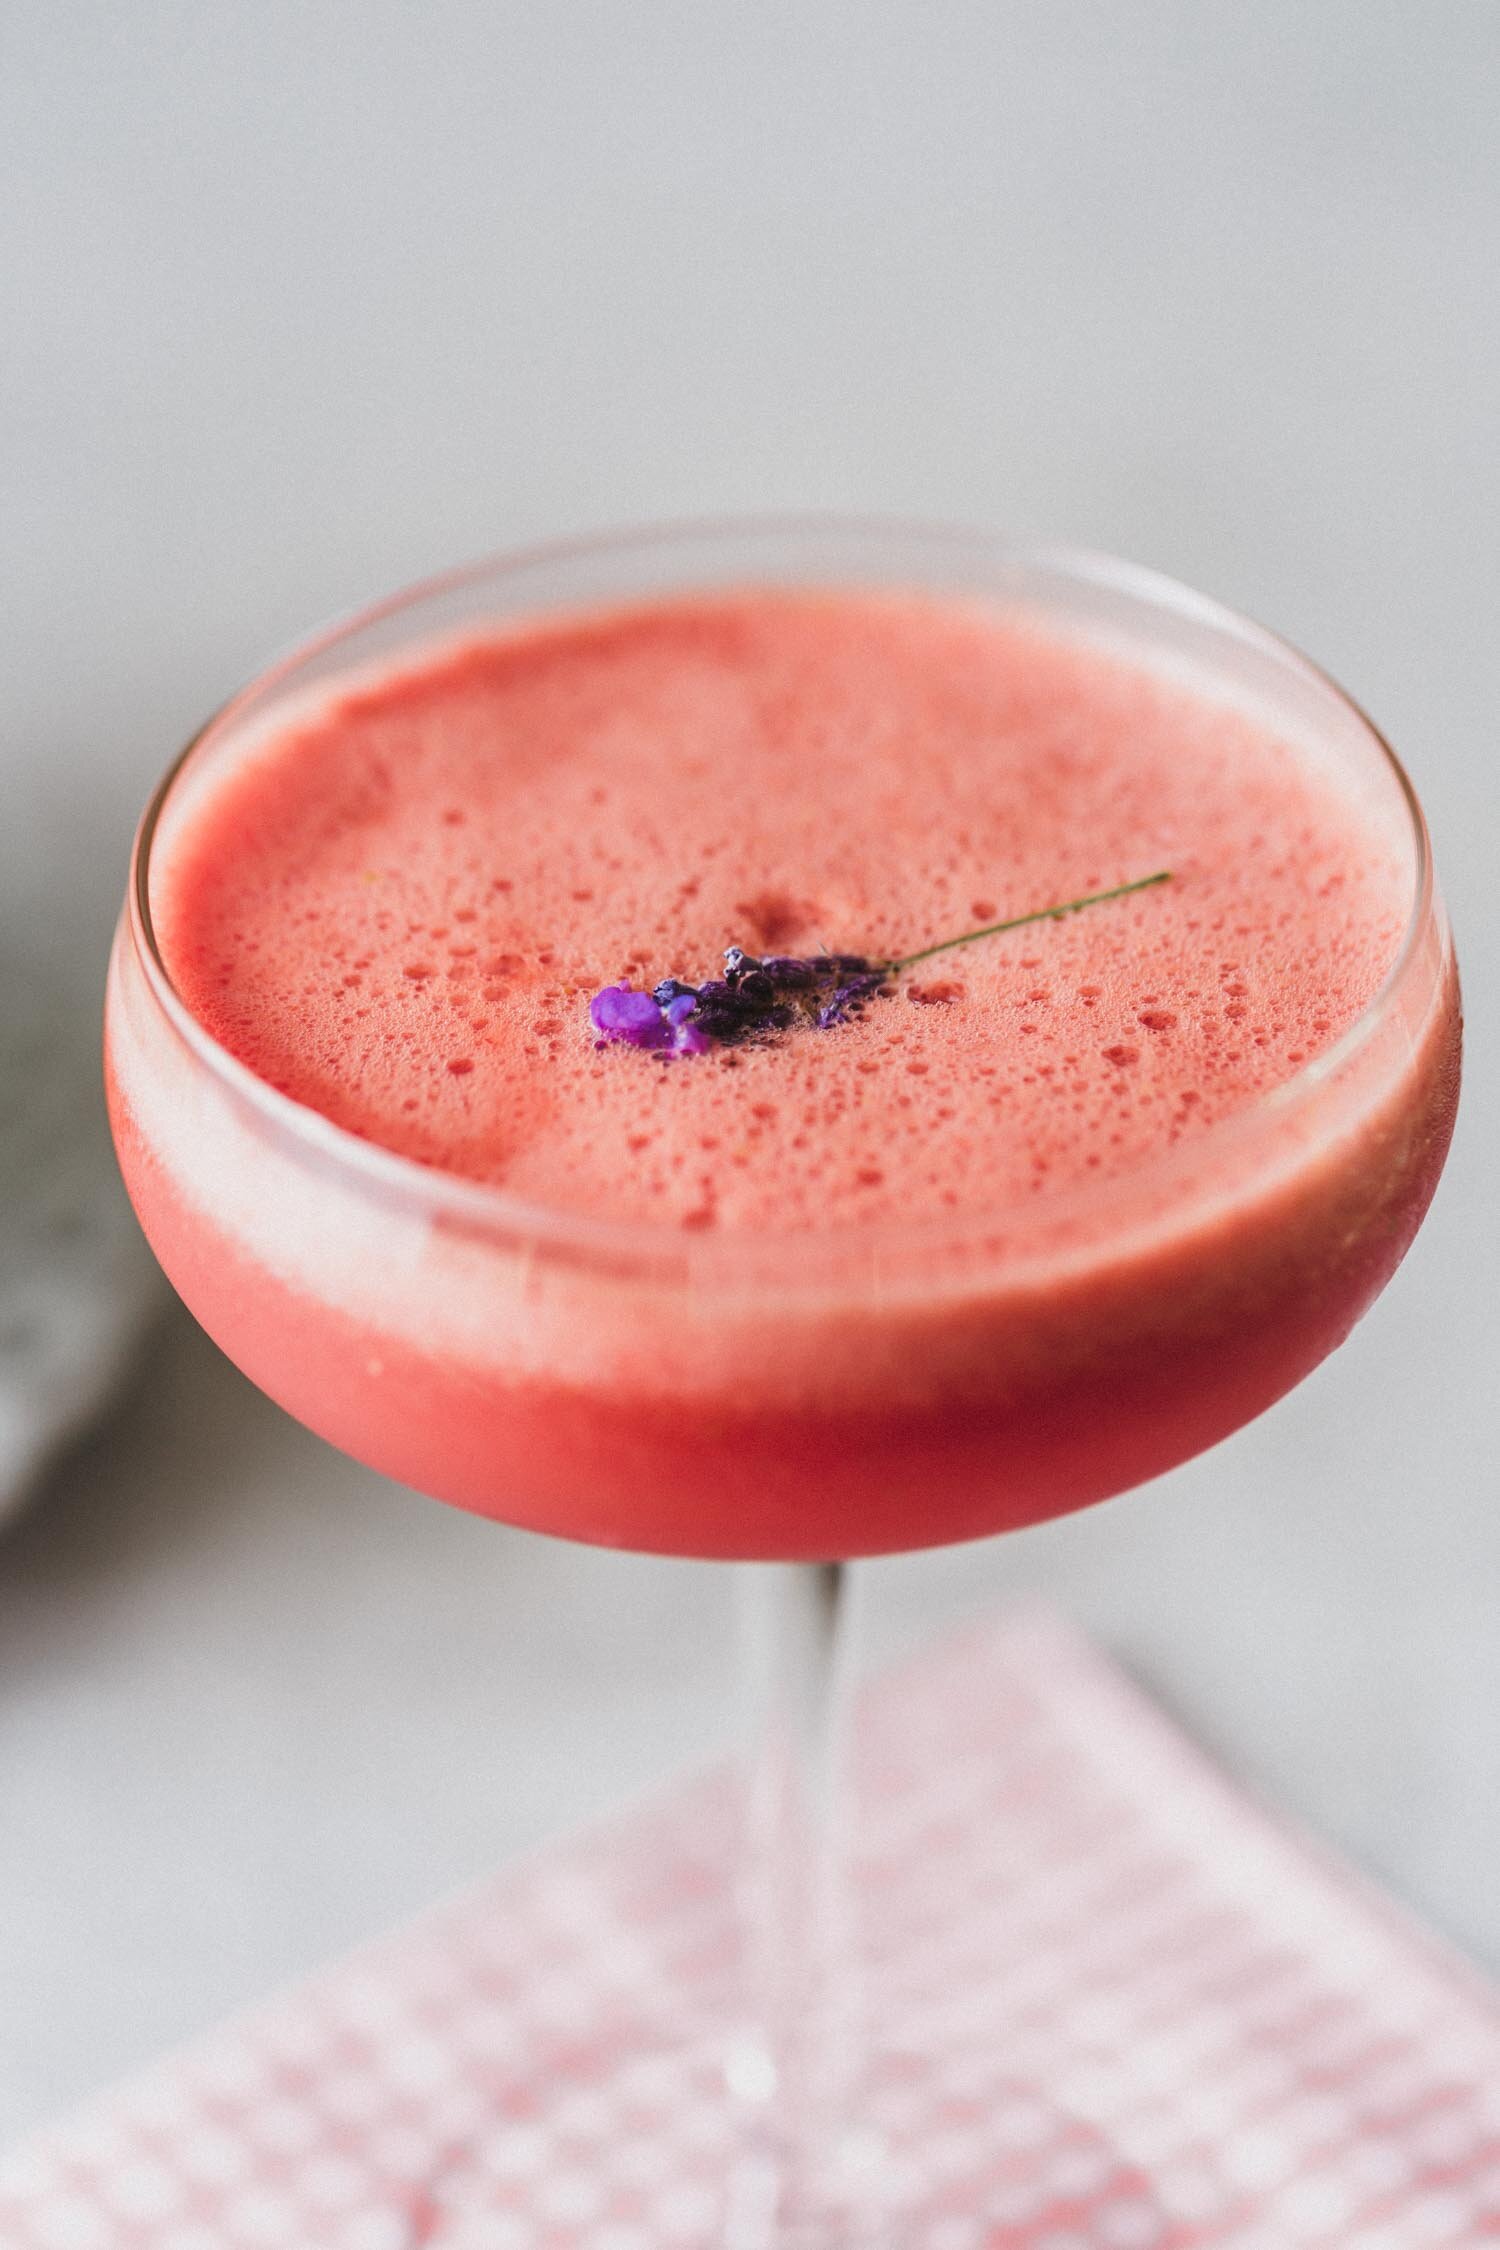 Lavender Watermelon Daiquiri recipe - a summer cocktail or mocktail by Kari of Beautiful Ingredient. #mocktail #cocktail #summerdrink #drink #watermelon #lavender #summerdrinksalcohol #summerdrinksnonalcoholic #daiquiri